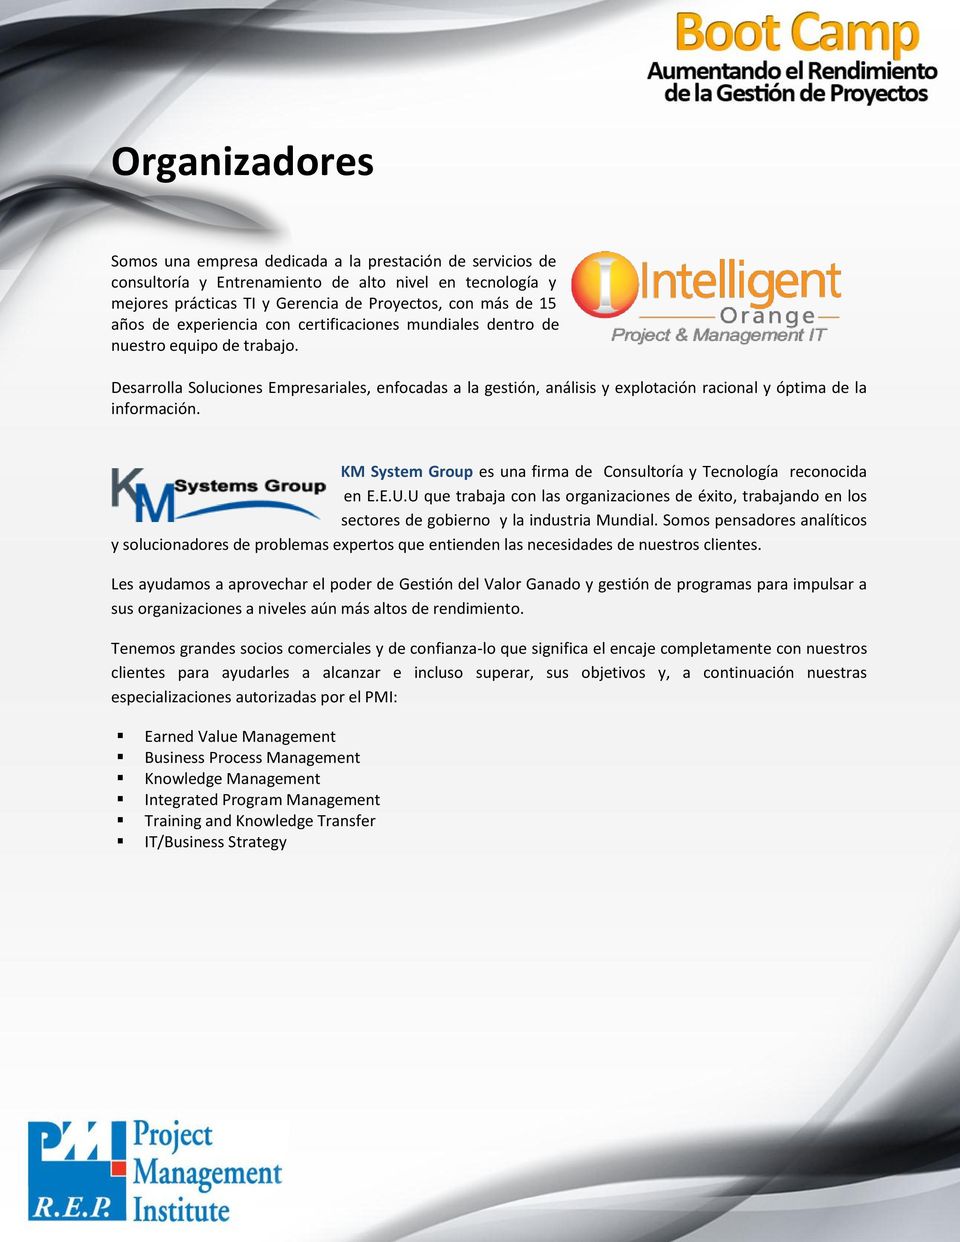 KM System Group es una firma de Consultoría y Tecnología reconocida en E.E.U.U que trabaja con las organizaciones de éxito, trabajando en los sectores de gobierno y la industria Mundial.